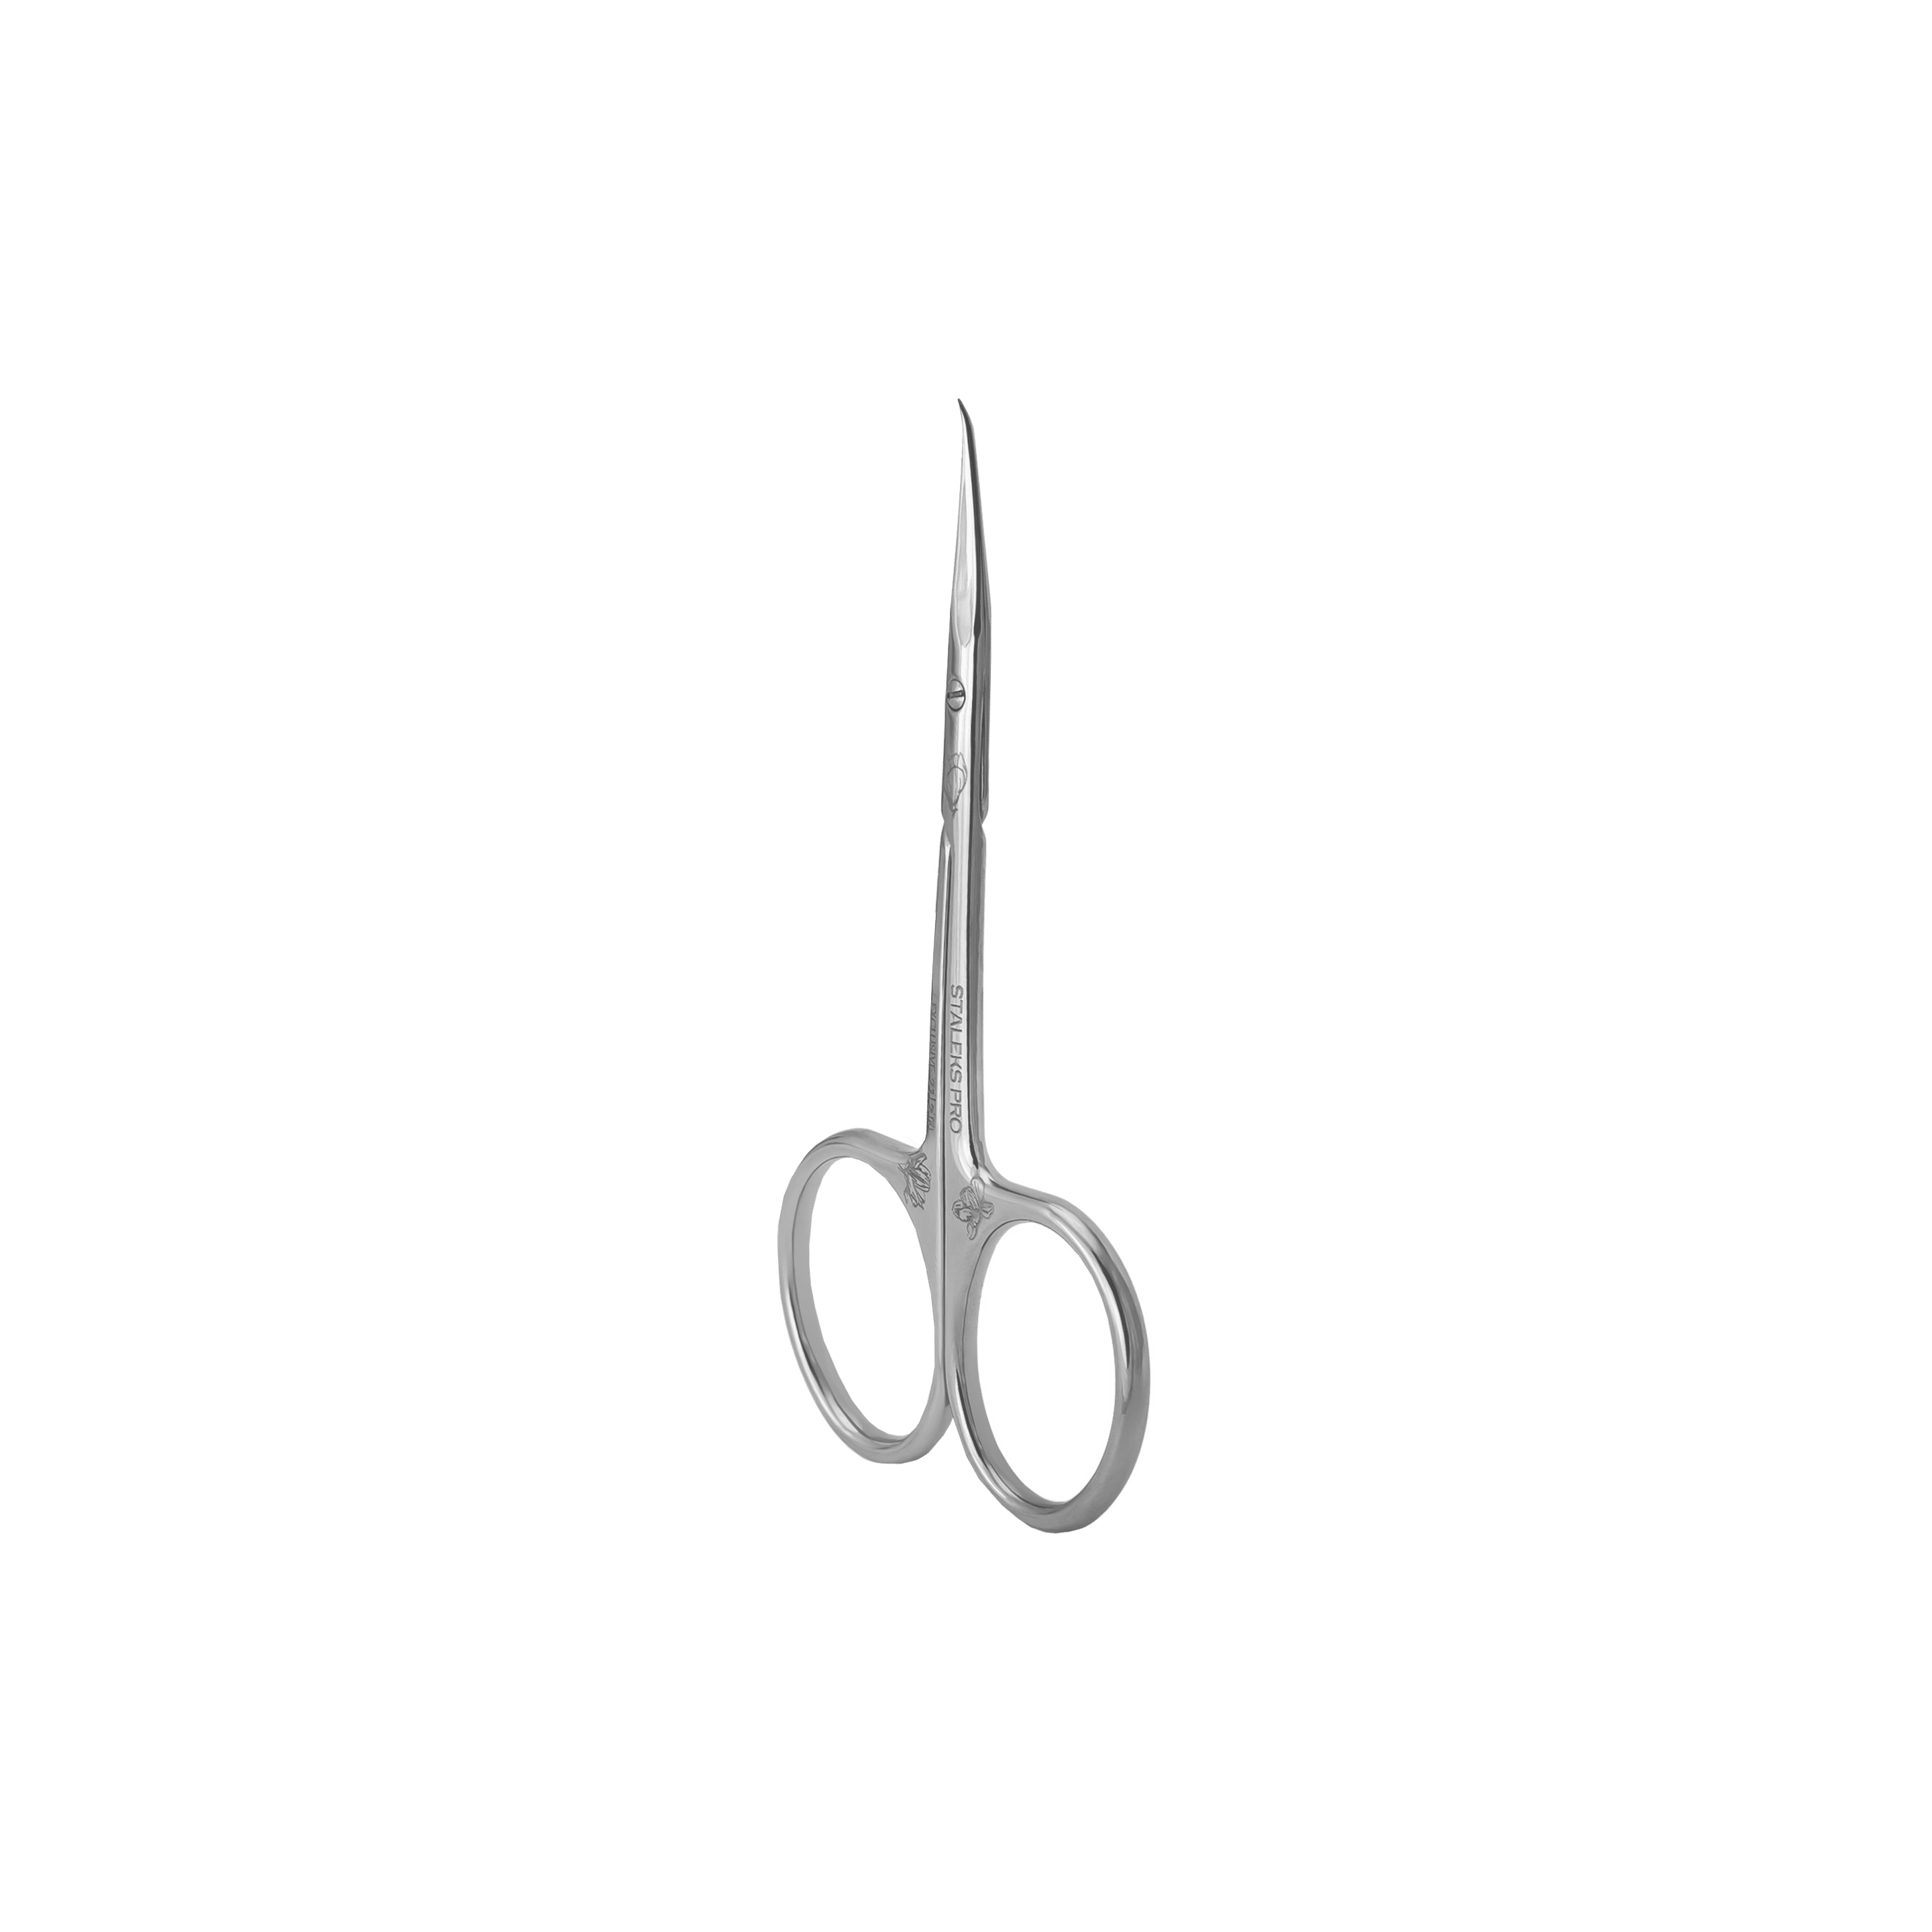 Professional scissors SX-21/2 magnolia 